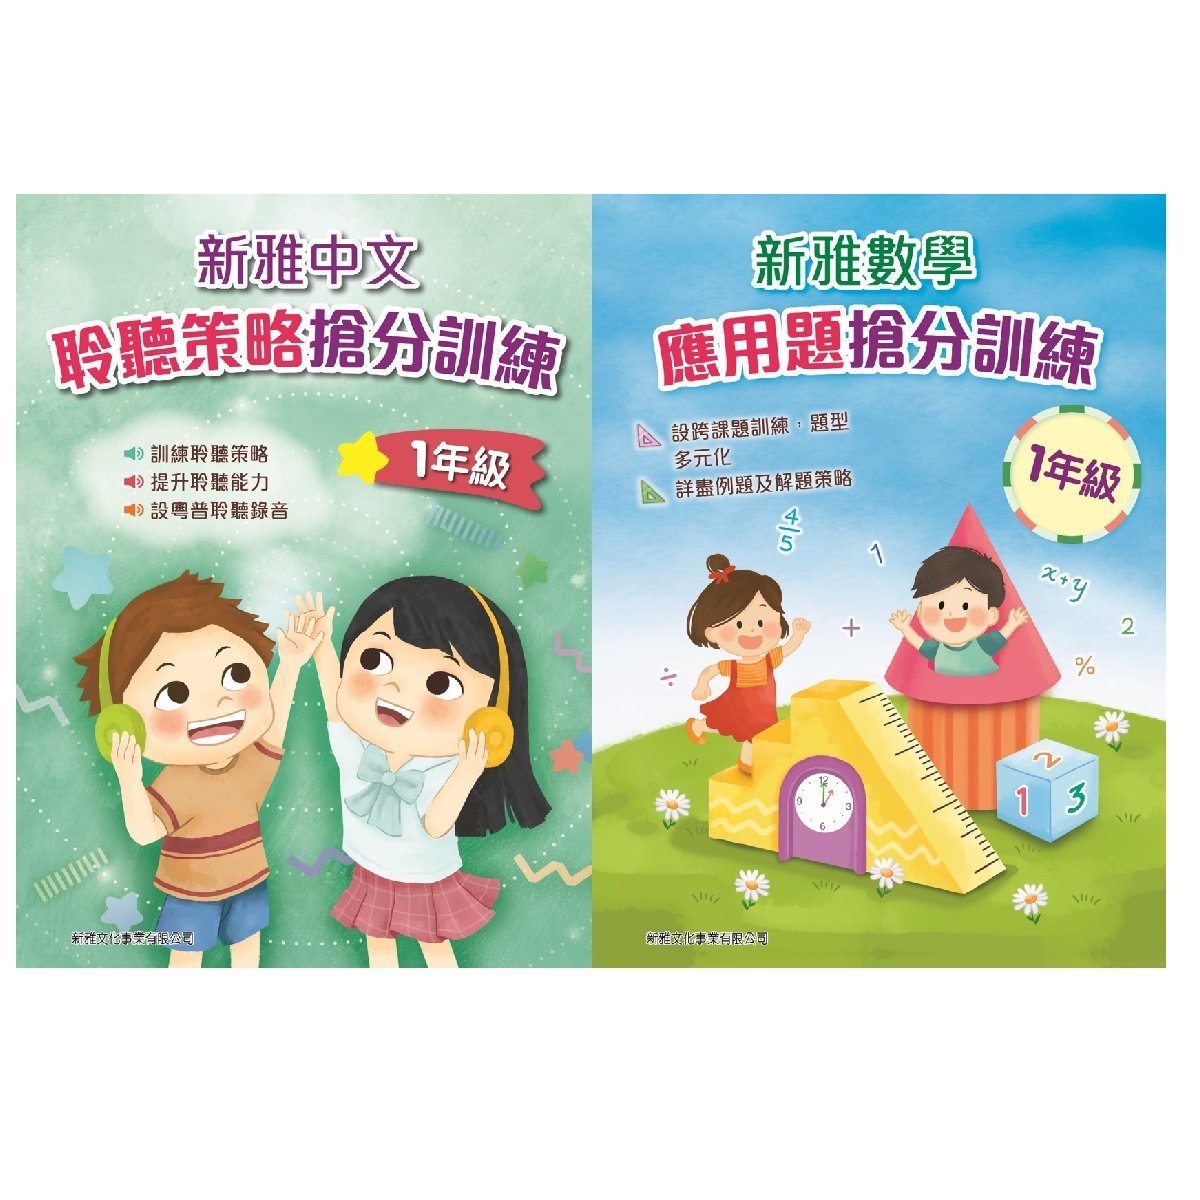 新雅中文聆聽策略搶分訓練、新雅數學應用題搶分訓練 (1年級)  (一套2冊)